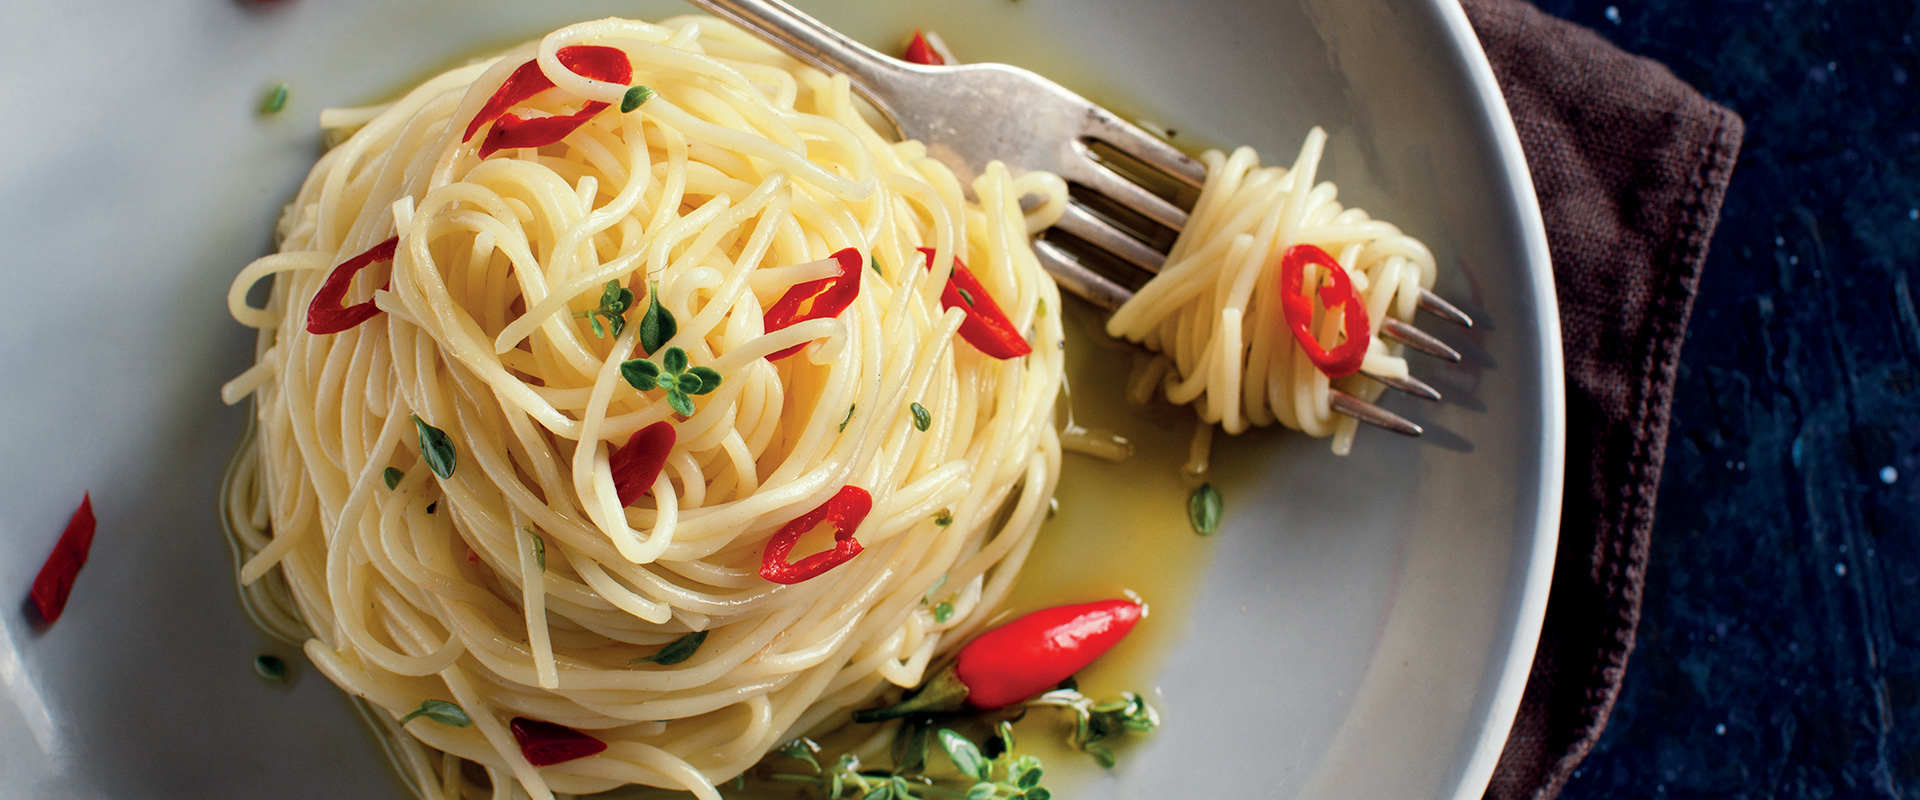 Spaghetti aglio olio e peperoncino: la Ricetta- Fratelli Carli